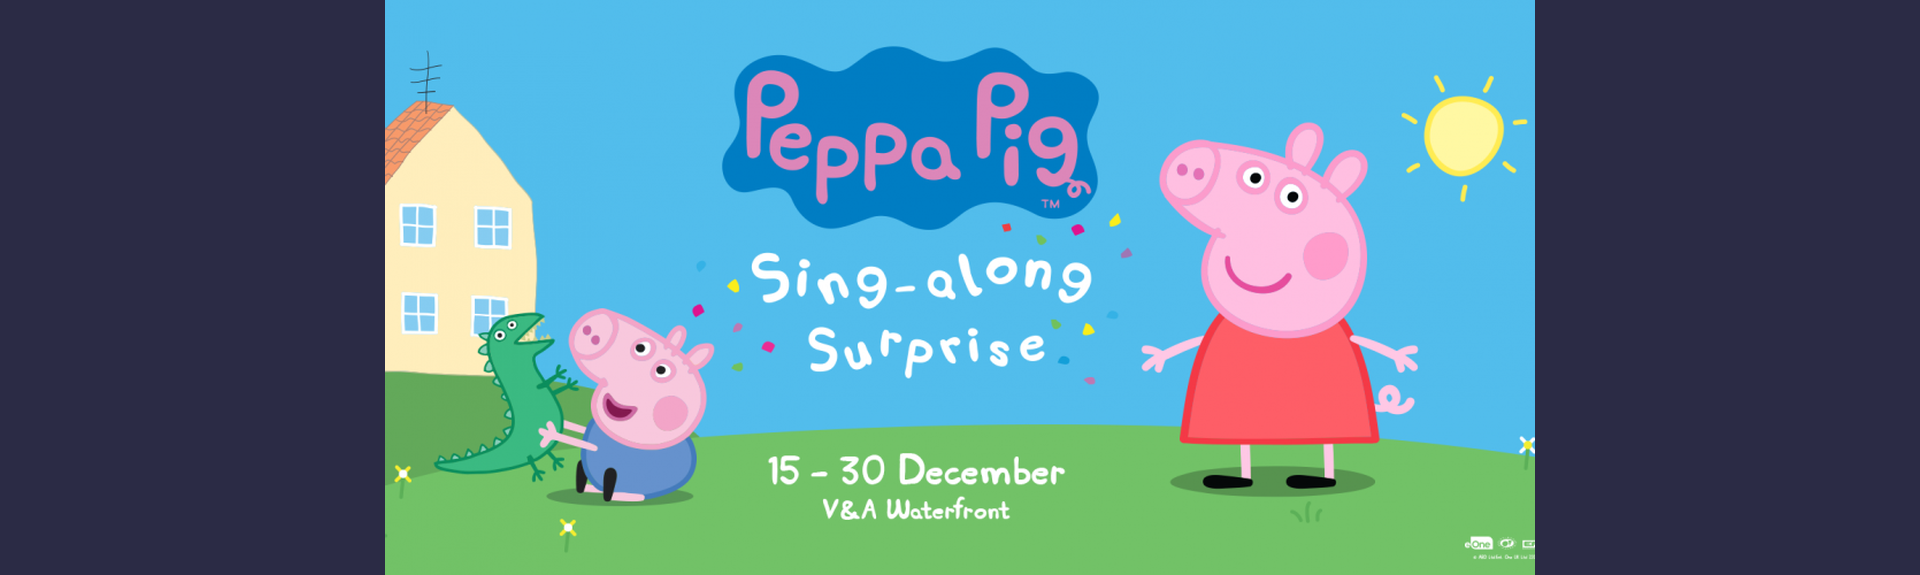 Peppa Pig Singalong Event - V